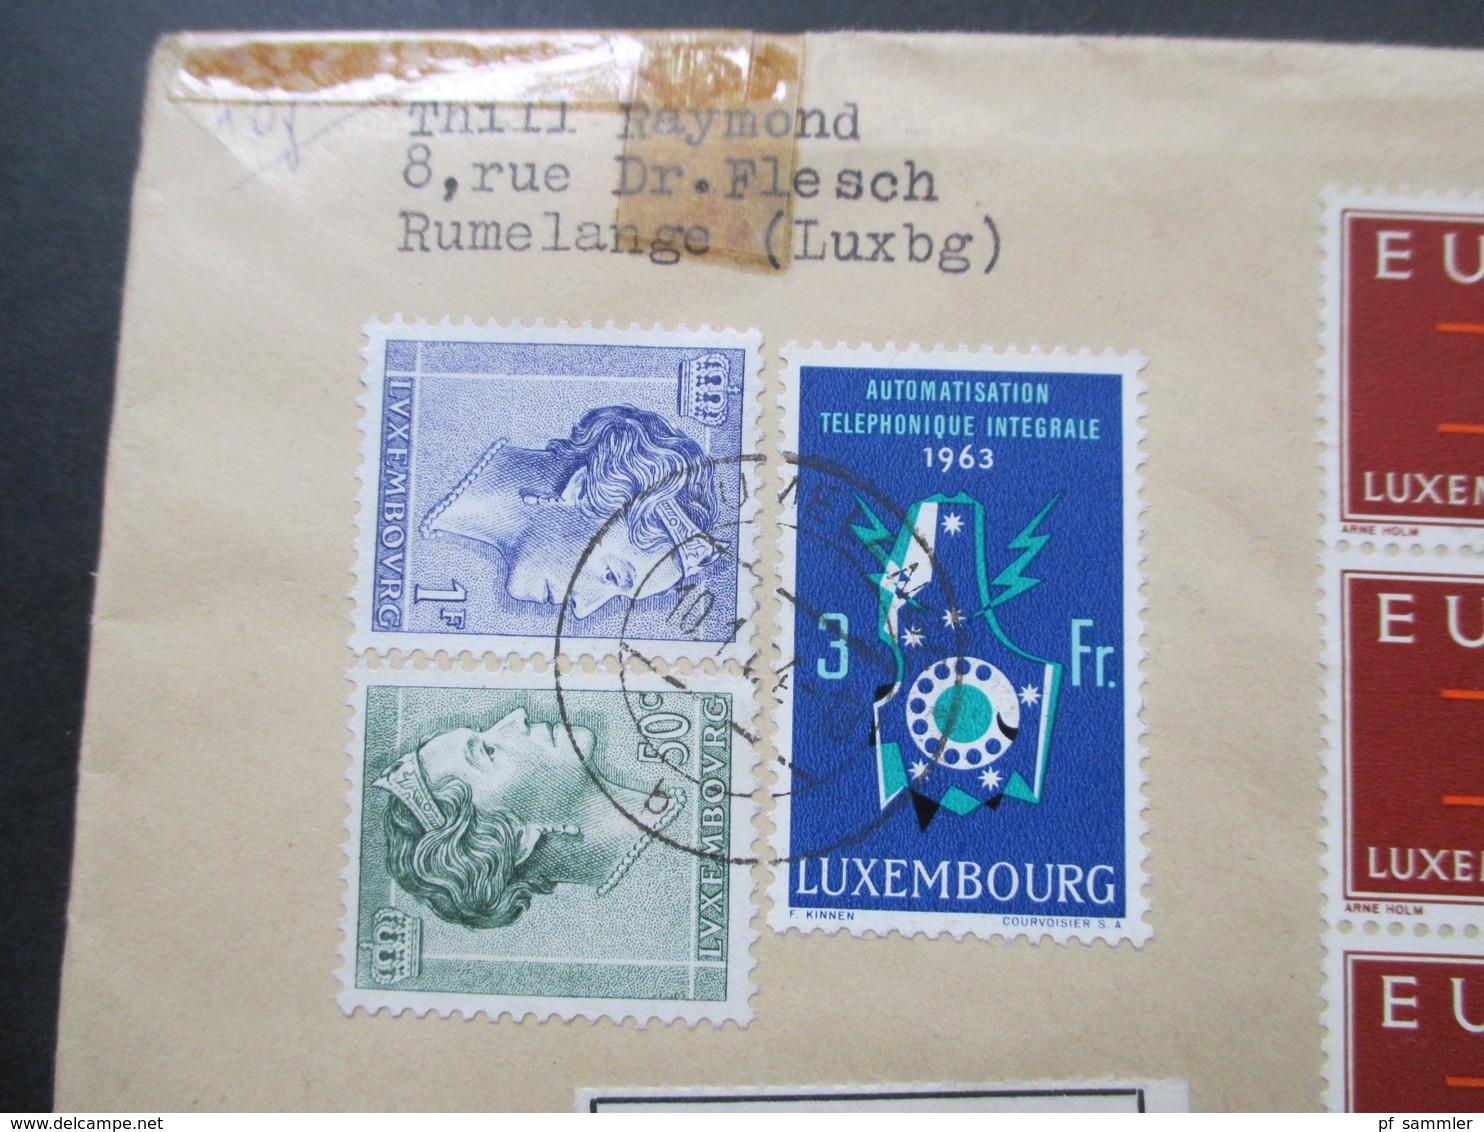 Luxemburg 1963 / 64 Einschreiben / Express Rumelange No 713 Recommande Europa Marken MiF Viele Stempel - Covers & Documents